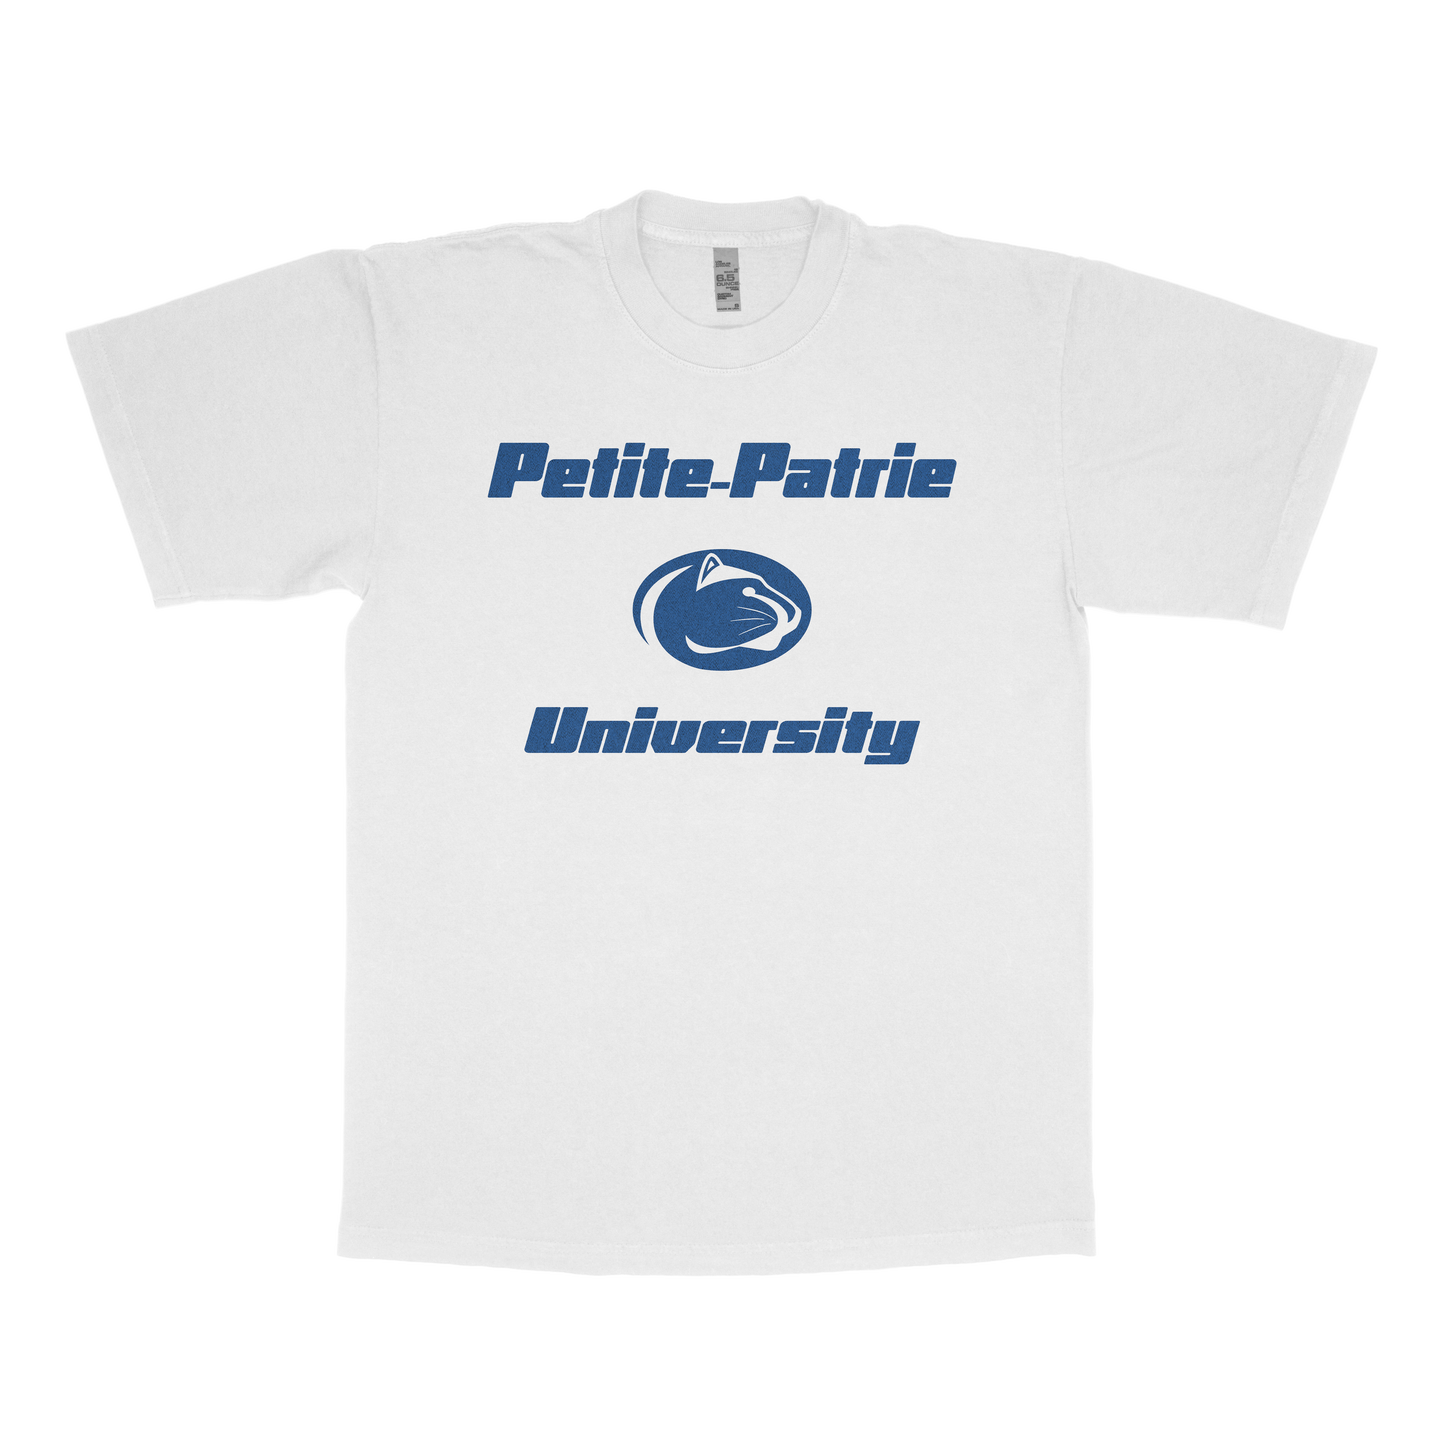 Petite-Patrie University (FAKE U)